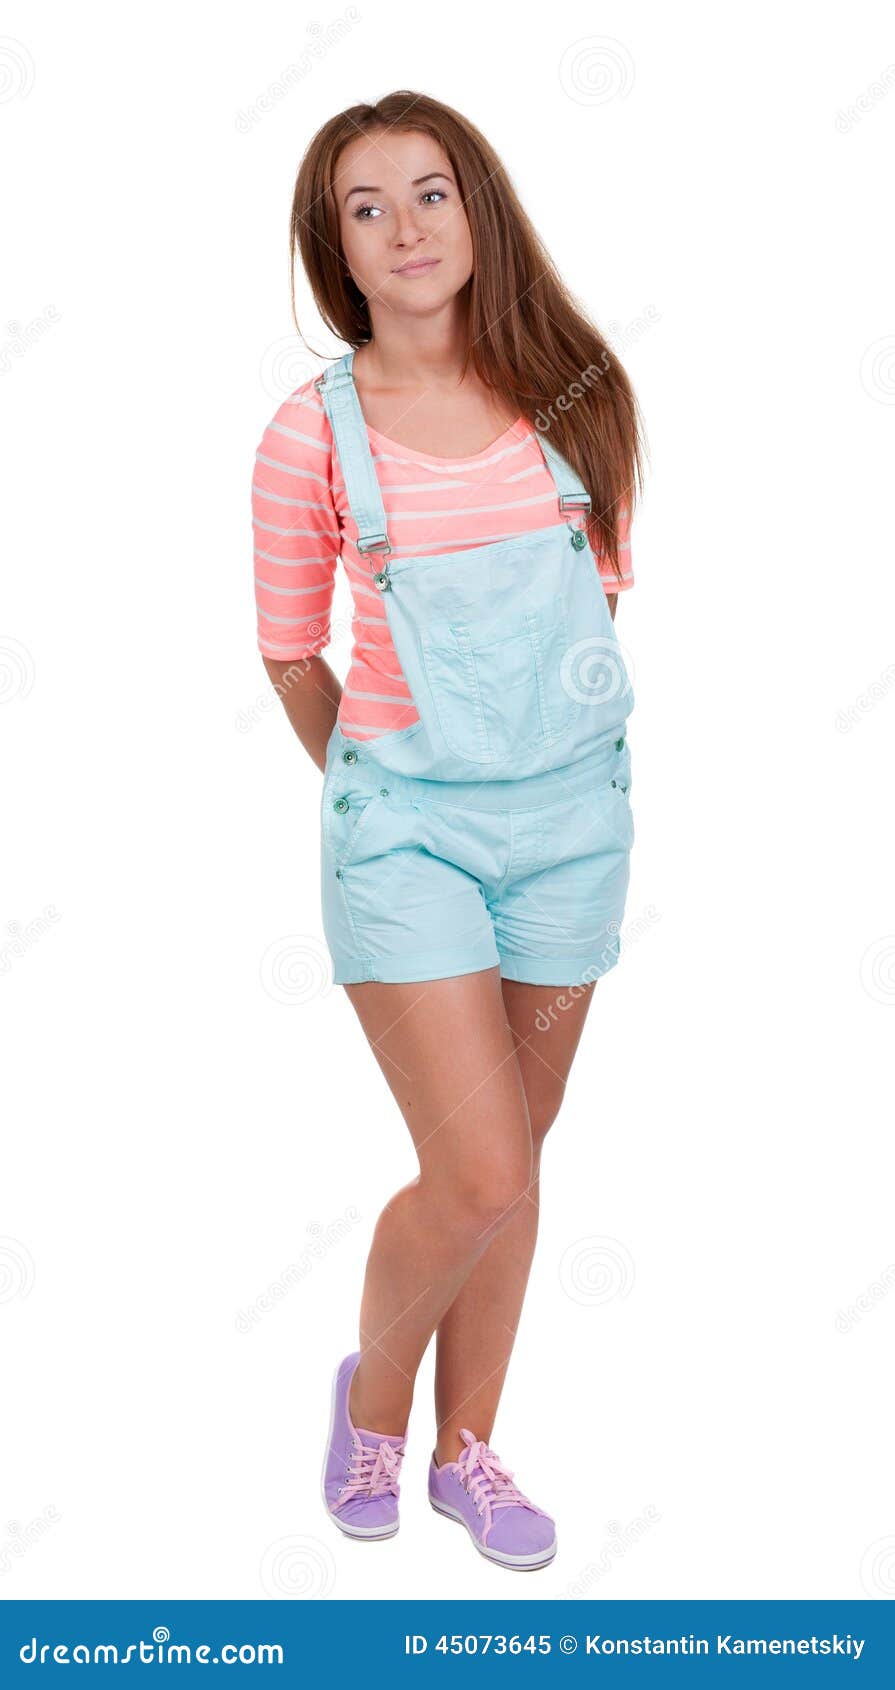 Muchacha adolescente pelirroja en pantalones cortos Aislado en el fondo blanco la muchacha atlética sonríe enigmáticamente mirando al lado